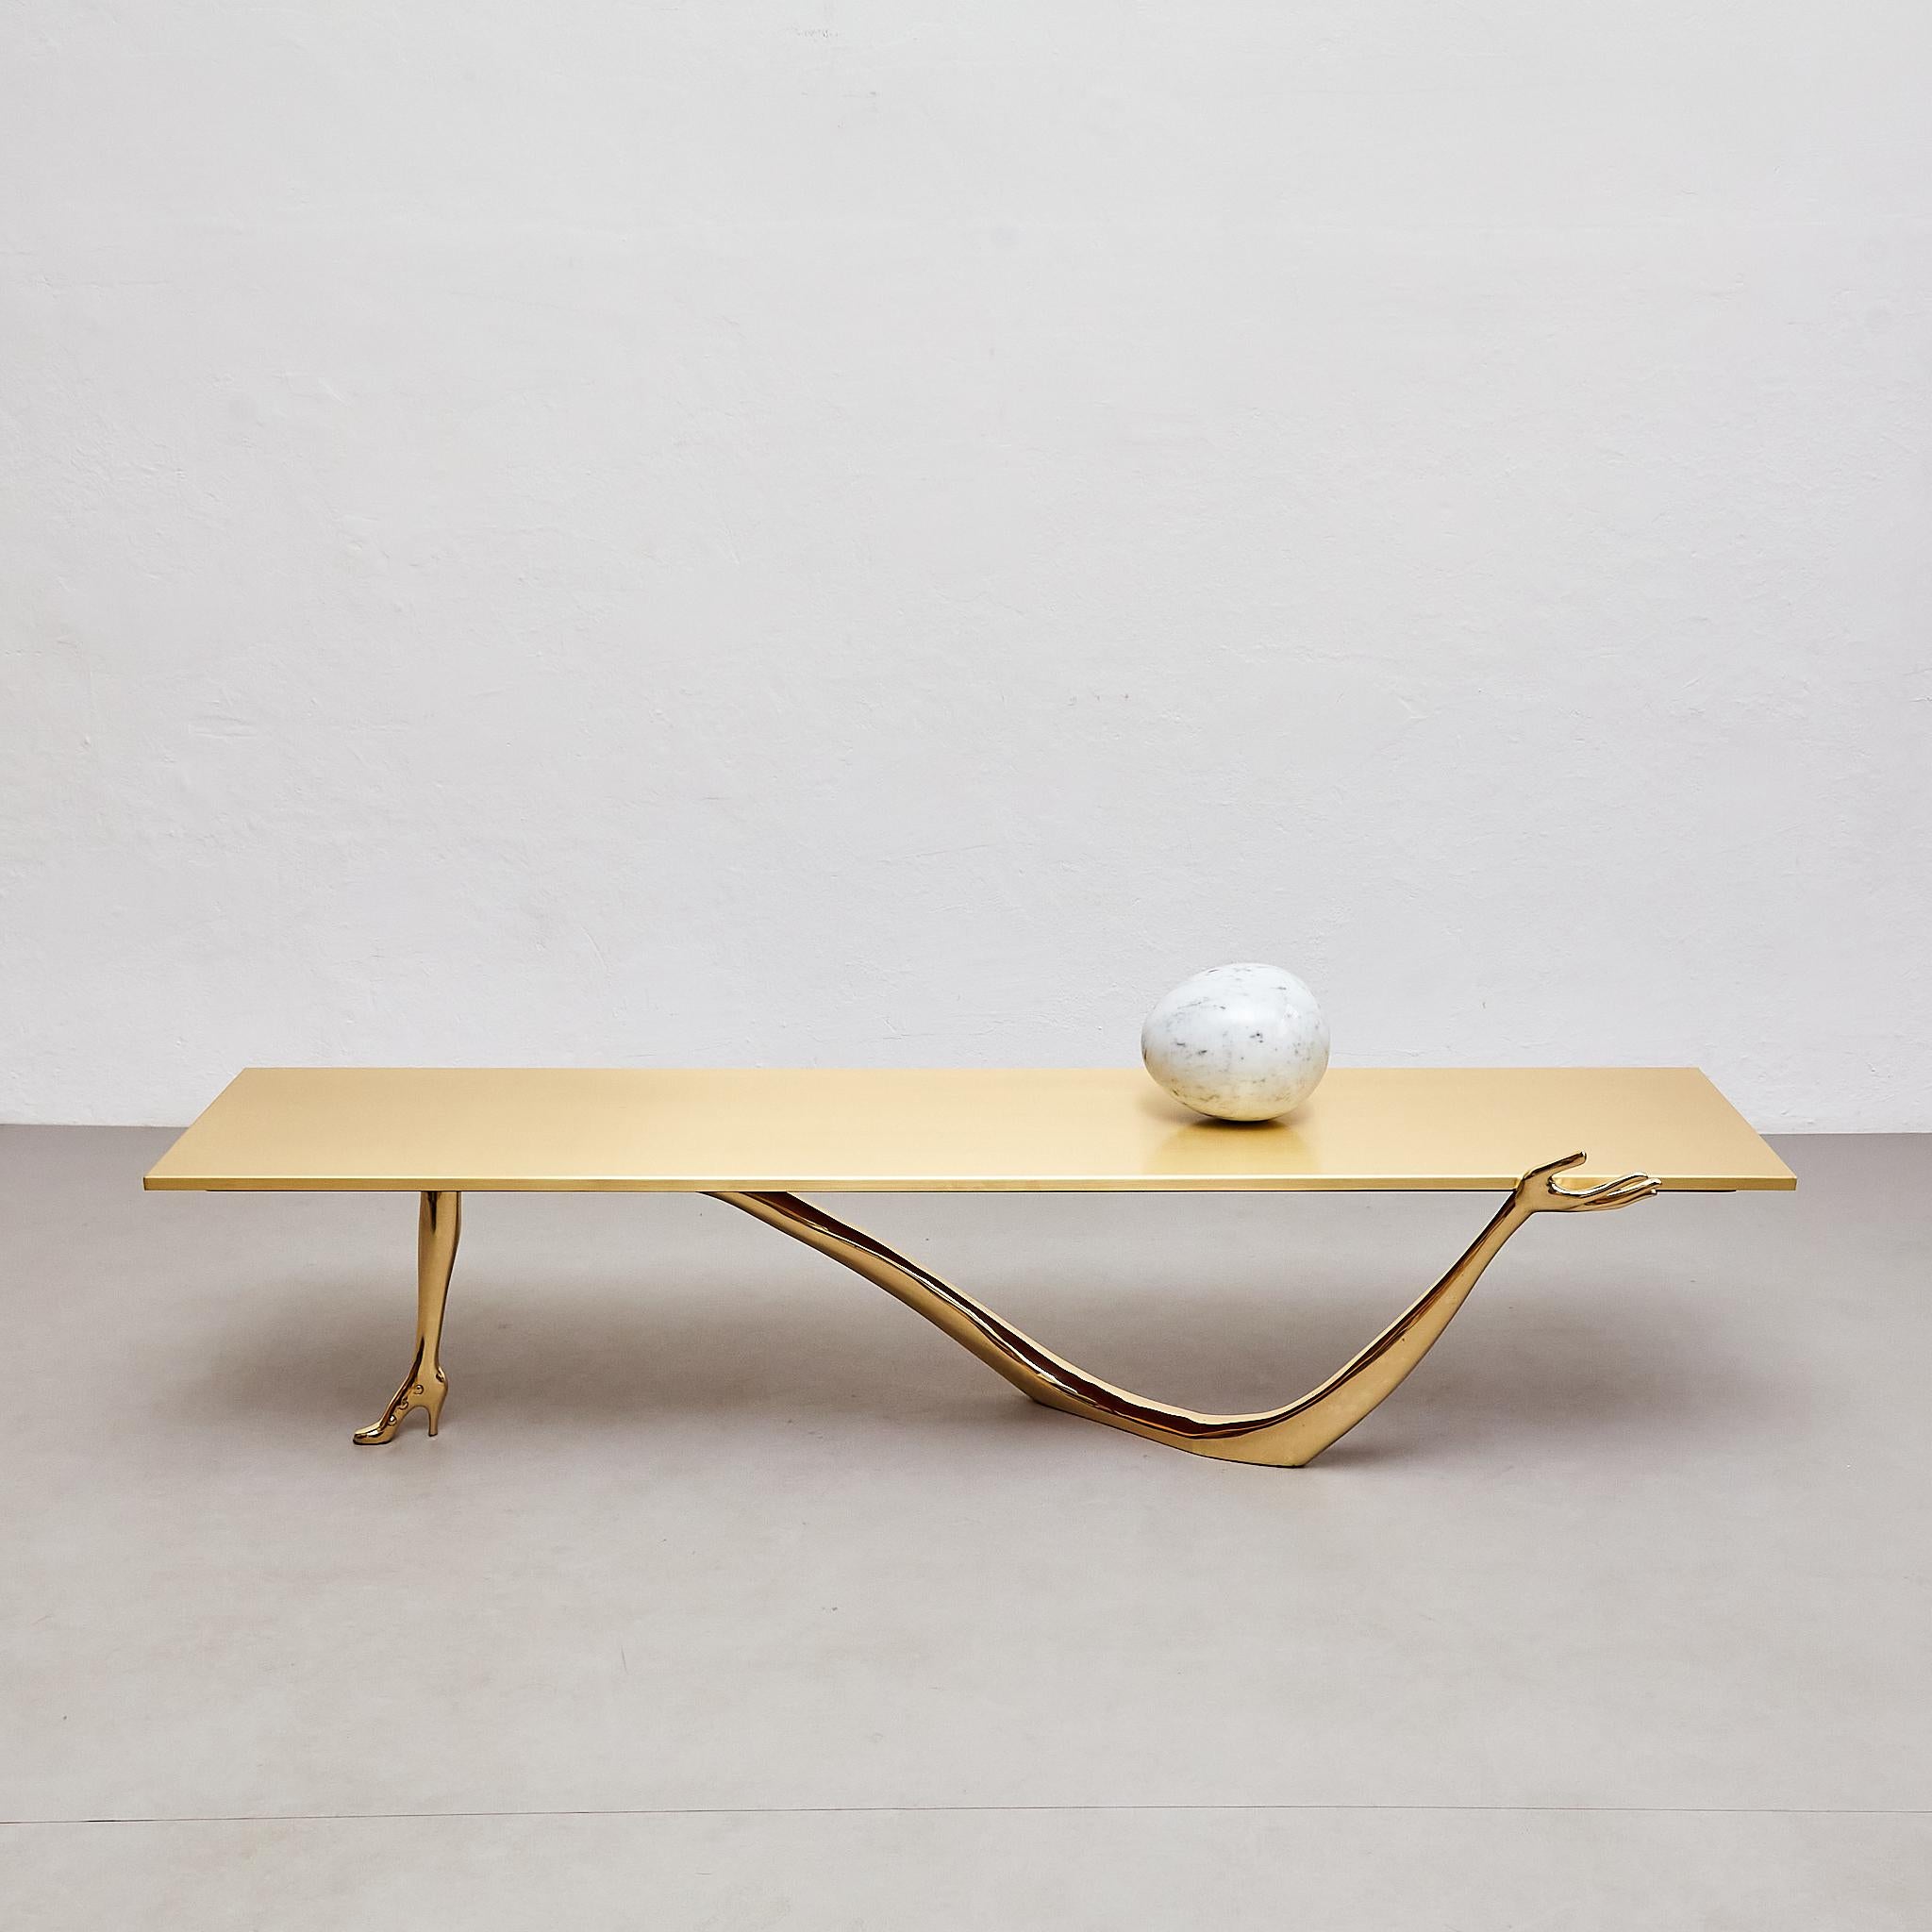 Wir stellen den faszinierenden Leda Low Table vor, eine atemberaubende Verkörperung von Kunst und Design, die Funktionalität und Eleganz nahtlos miteinander verbindet. Dieses exquisite, mit unvergleichlicher Liebe zum Detail gefertigte Stück zeugt